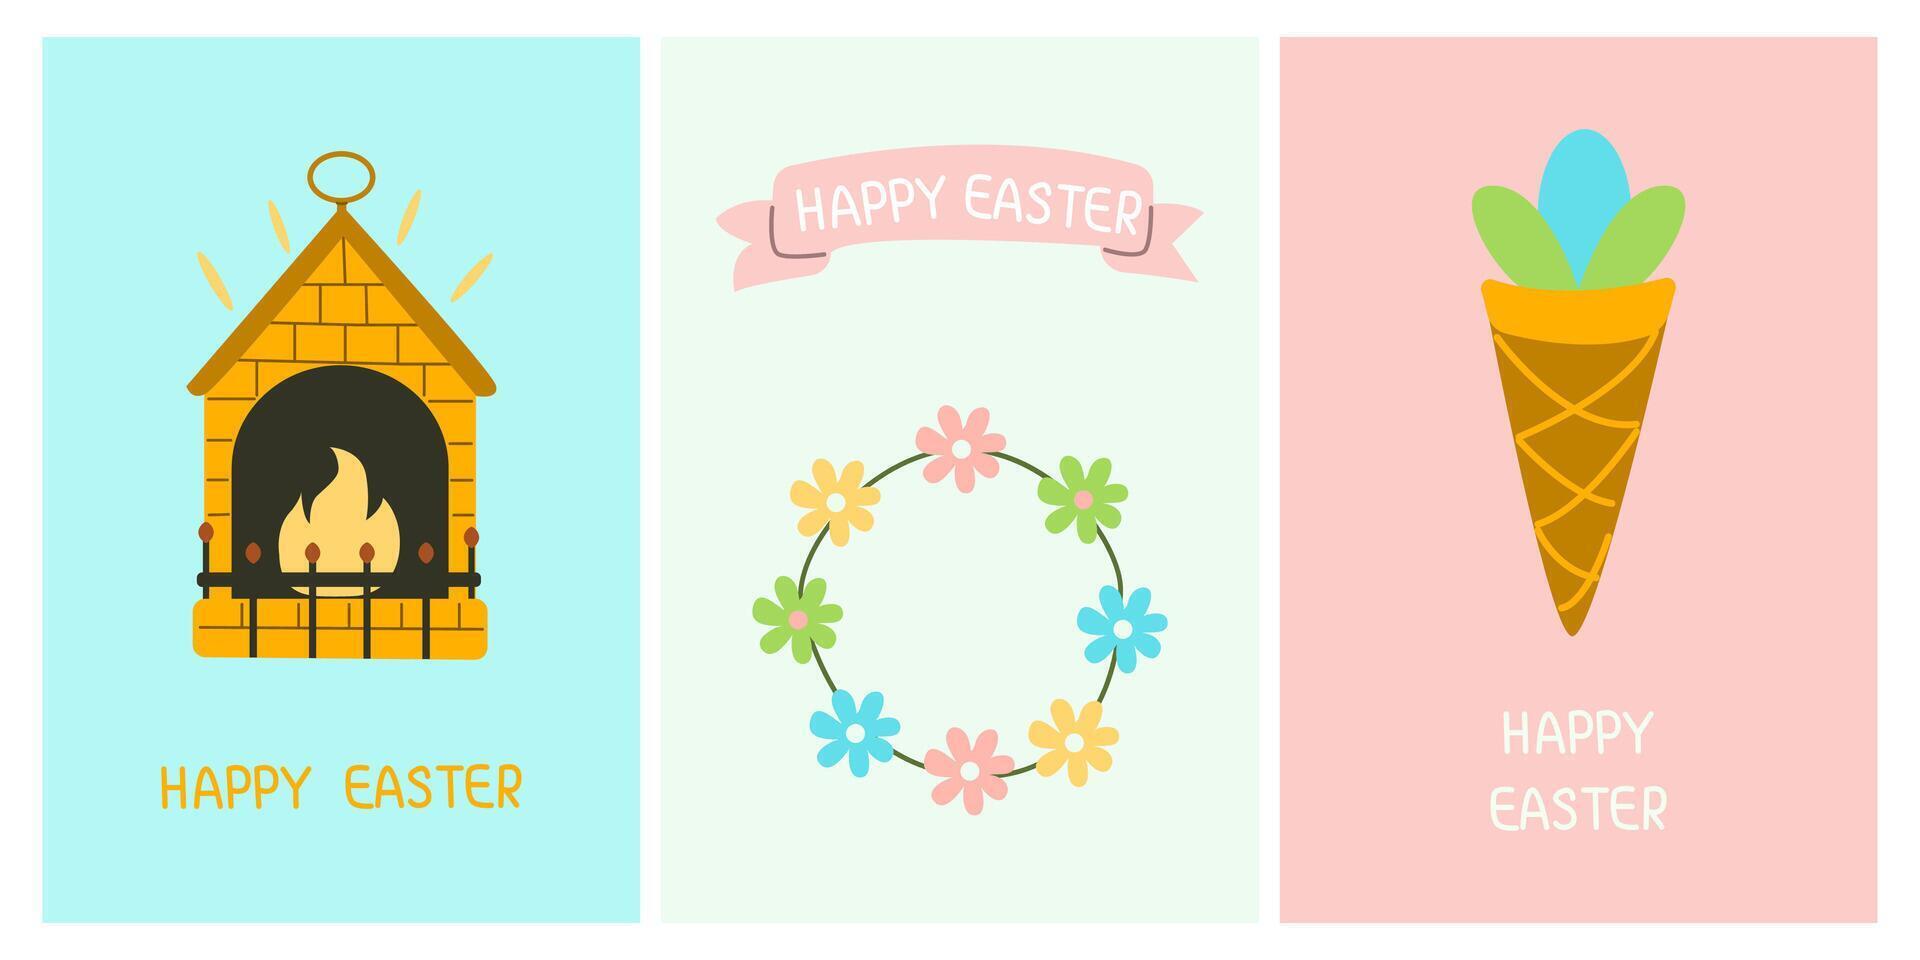 saludo linda tarjetas para el Pascua de Resurrección día festivo. hielo crema, chimenea, guirnalda de flores para carteles, tarjetas, álbum de recortes, pegatinas vector